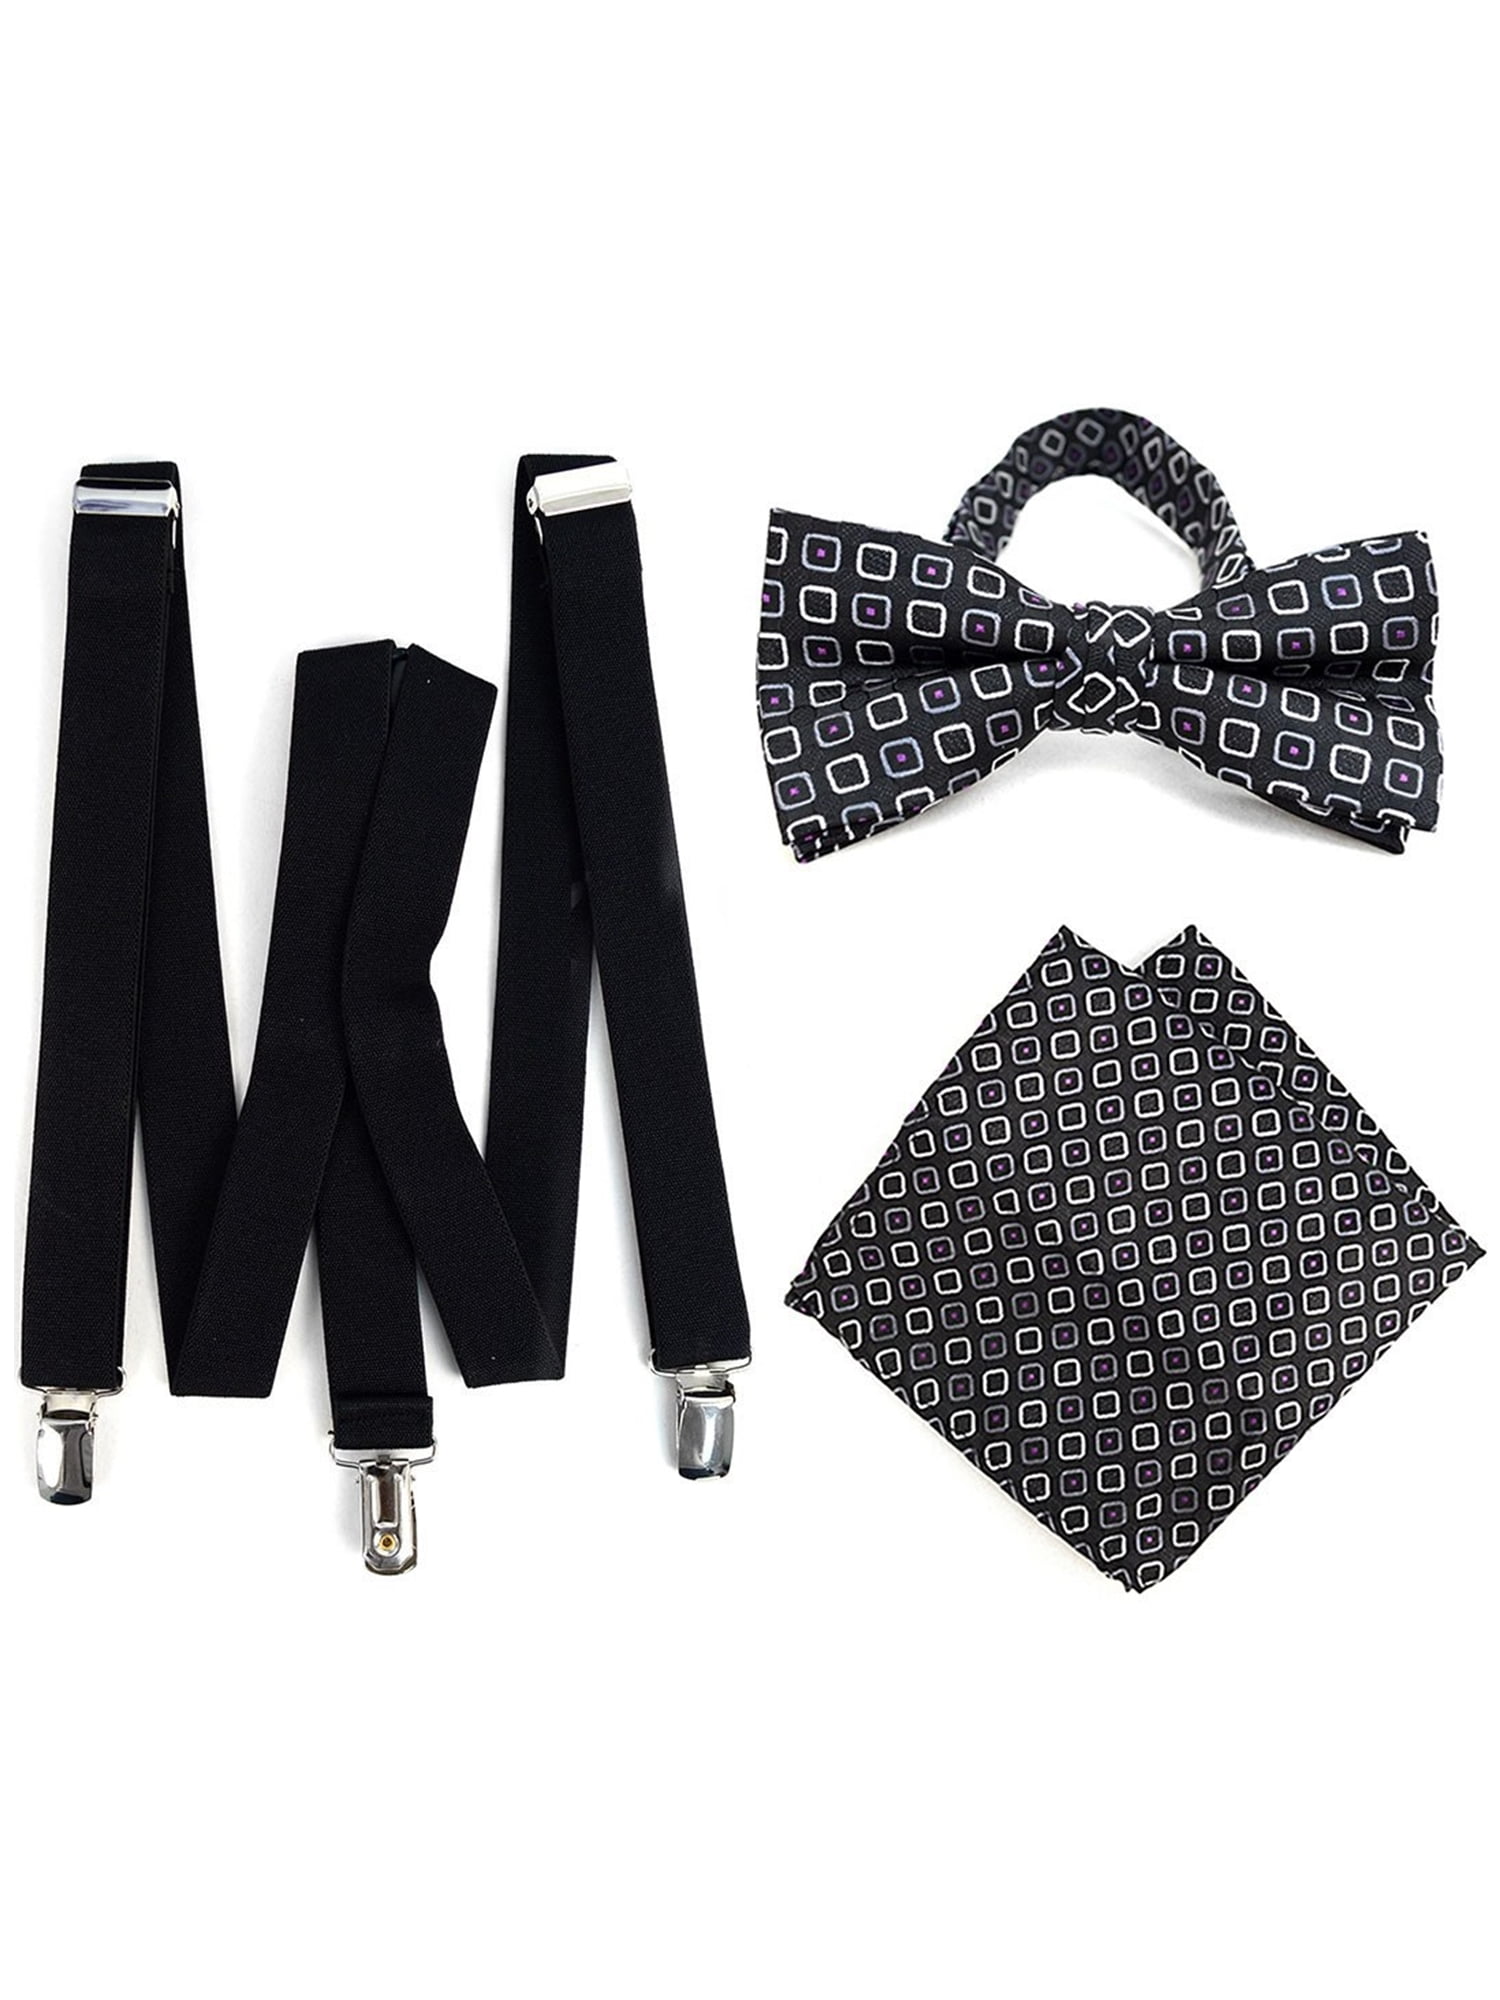 Bow Tie and Hanky Sets FYBTHSU5 Men's Black Checks 3 PC Clip-on Suspenders